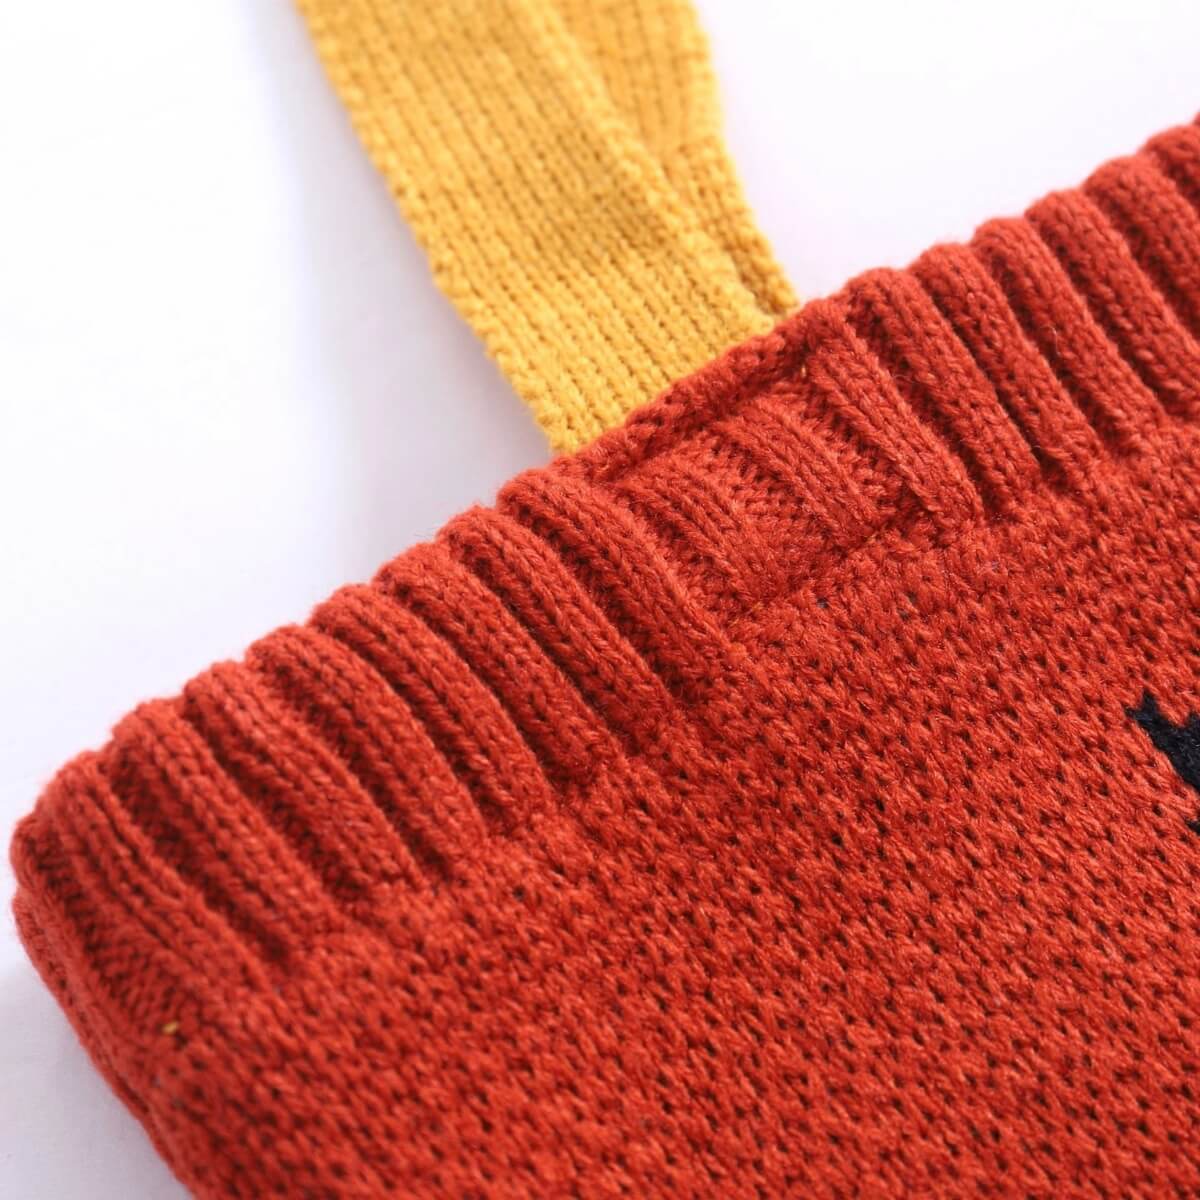 XYANFA Knitting Cuts Of Lamb Knitting Tote Bag Knitter Tote Bag